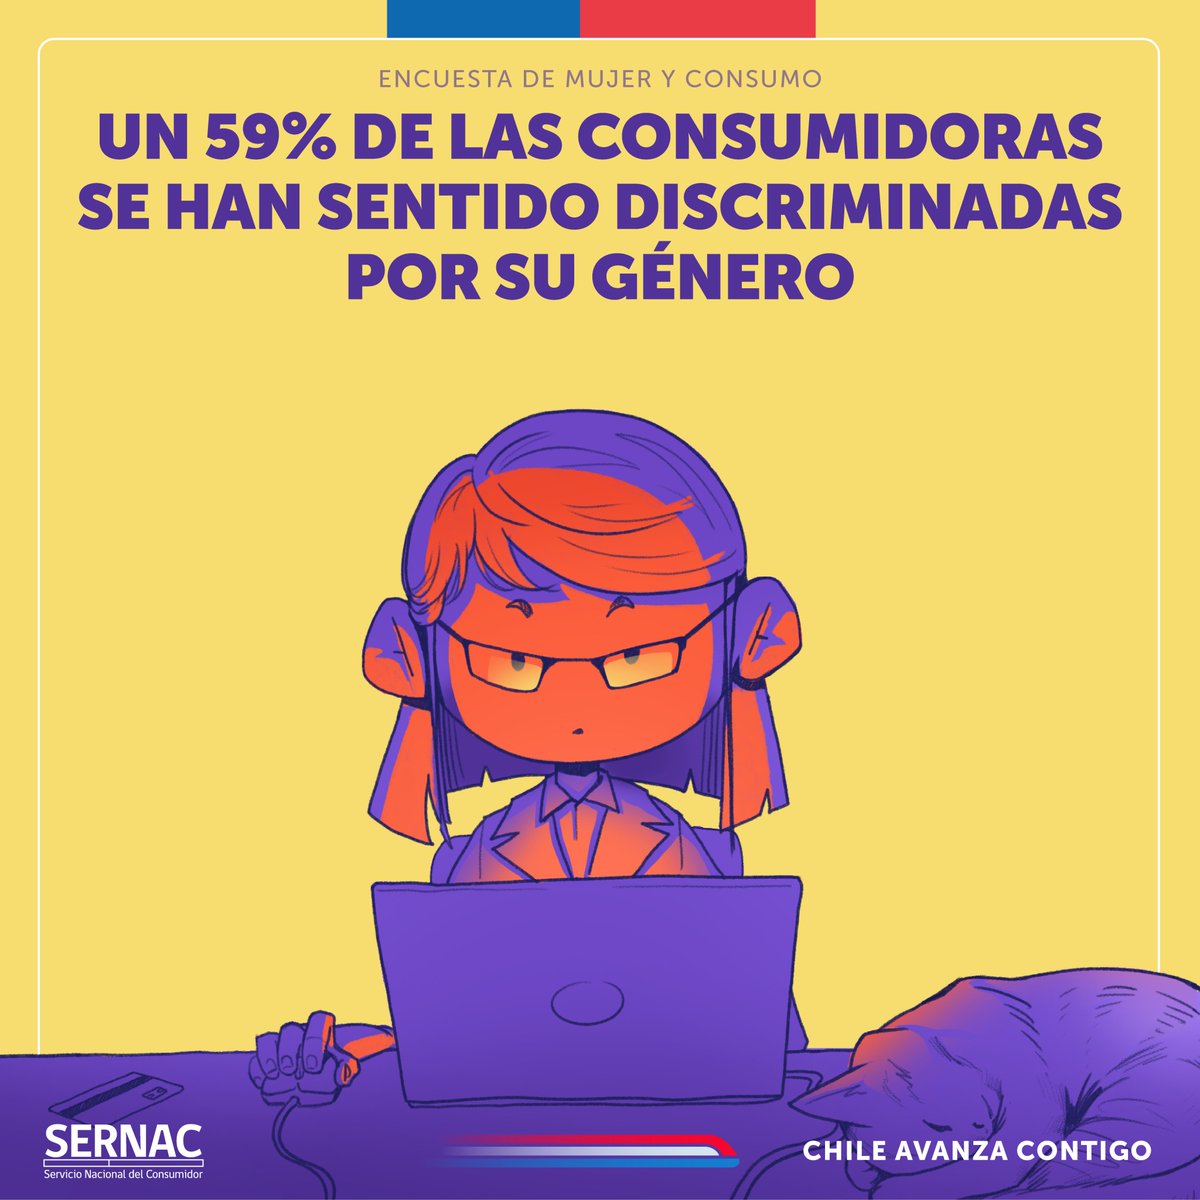 🗒️♀️La Encuesta de Percepción Mujer y Consumo de SERNAC, nos ayuda a visibilizar las principales discriminaciones que enfrentan las mujeres al ser clientas o consumidoras. Conoce más sobre la encuesta acá 👉sernac.cl/portal/604/w3-…